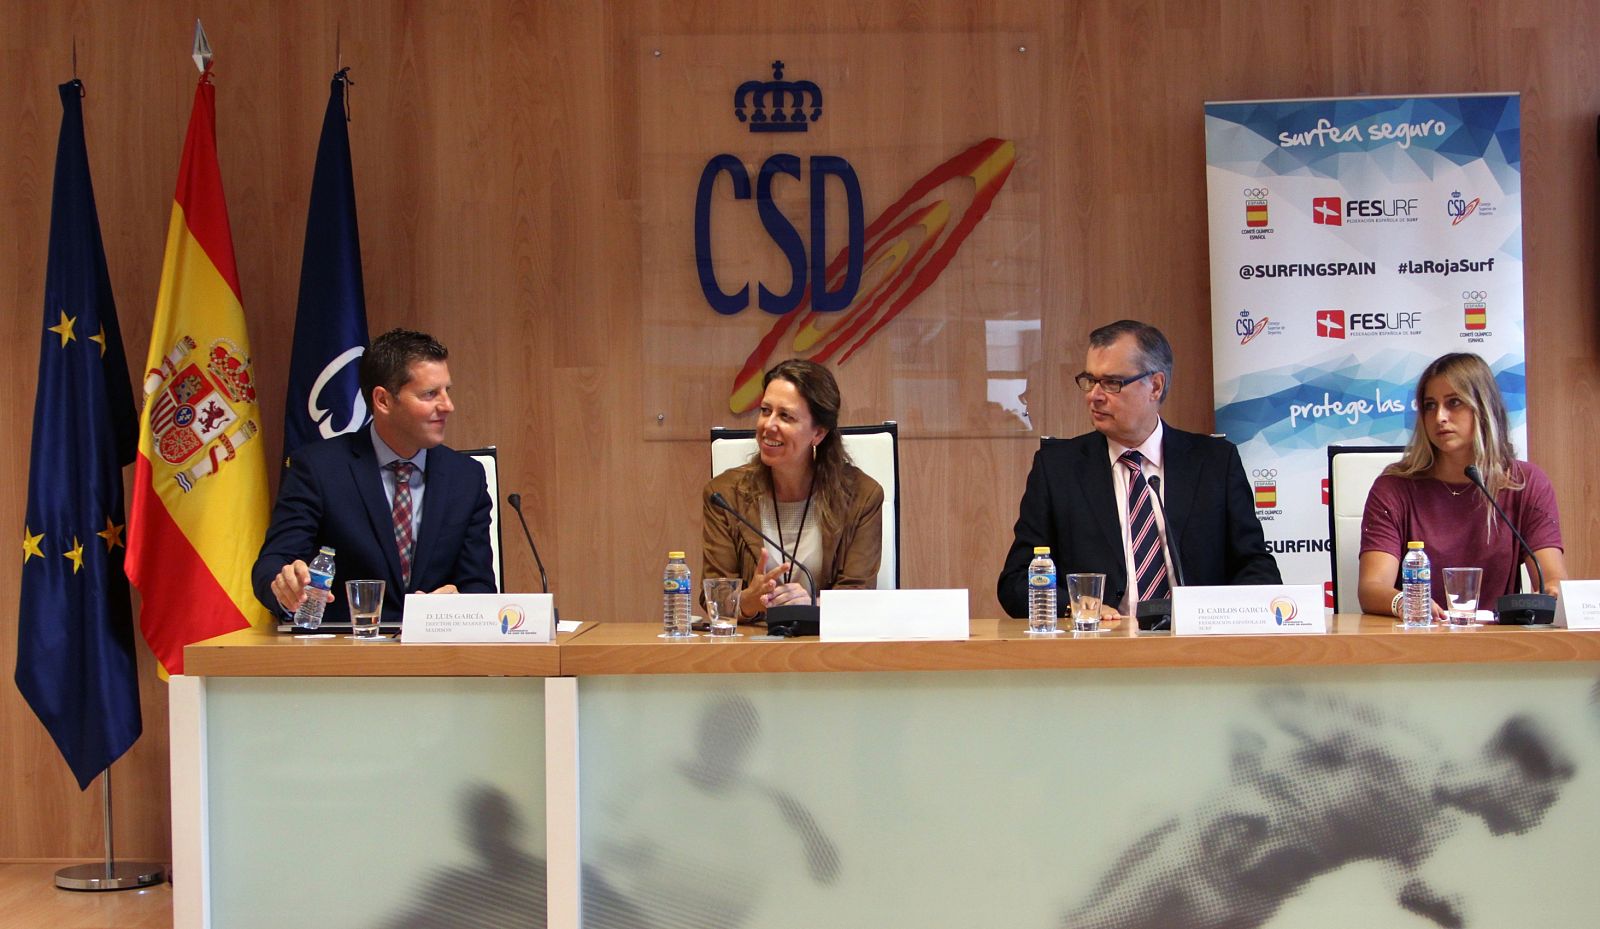 Imagen de la presentación de la final del Campeonato de España de Surf en el CSD.